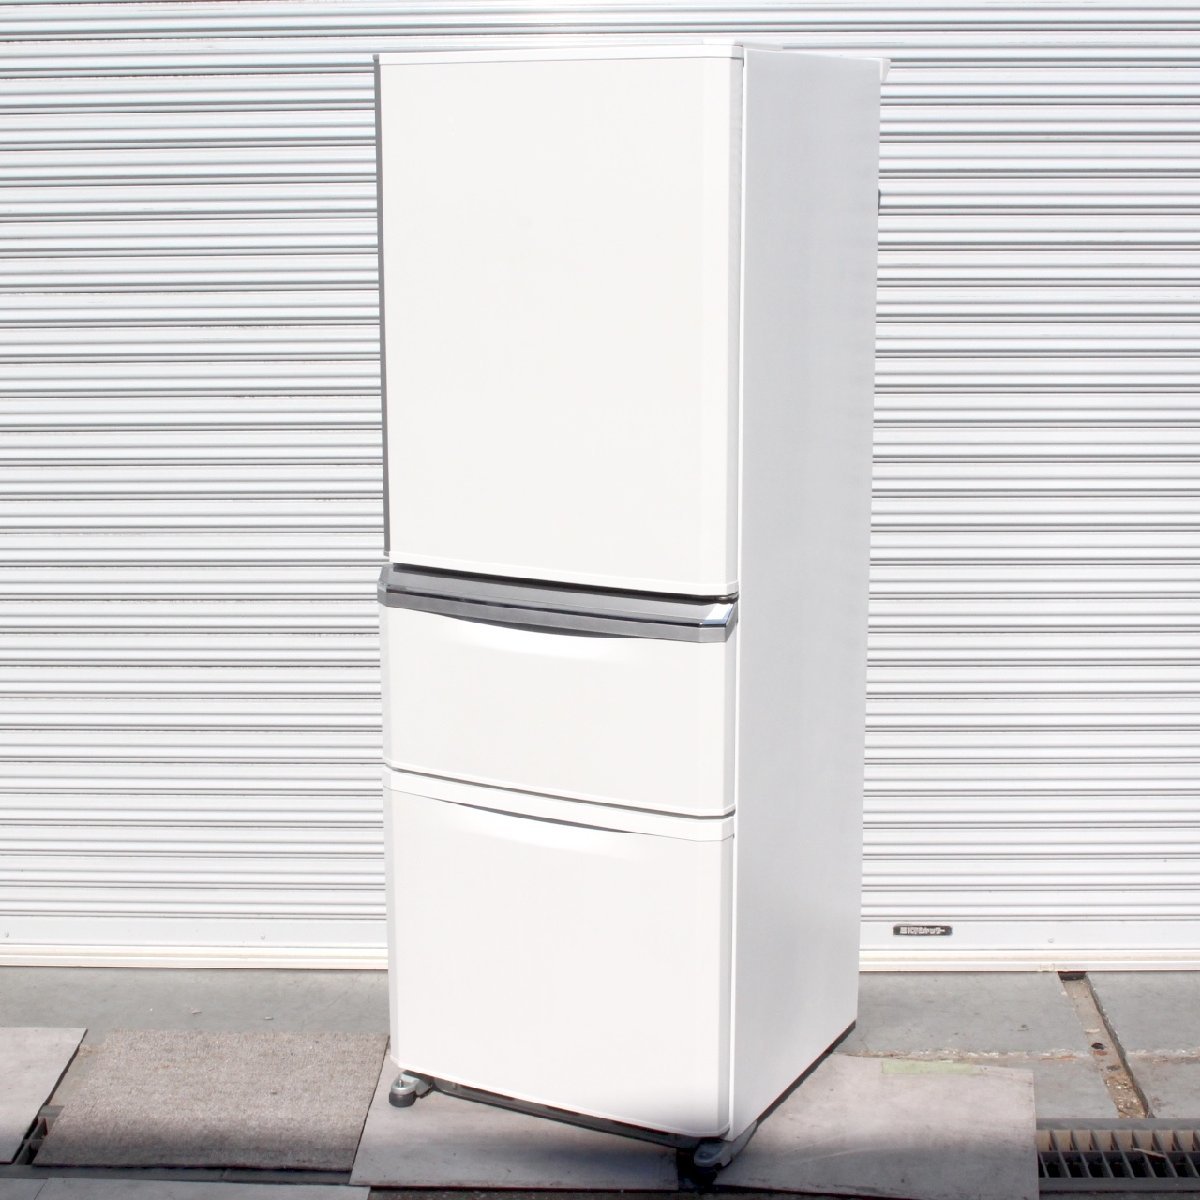 川崎市高津区にて 三菱 冷蔵庫 MR-C34C 2018年製 を出張買取させて頂きました。